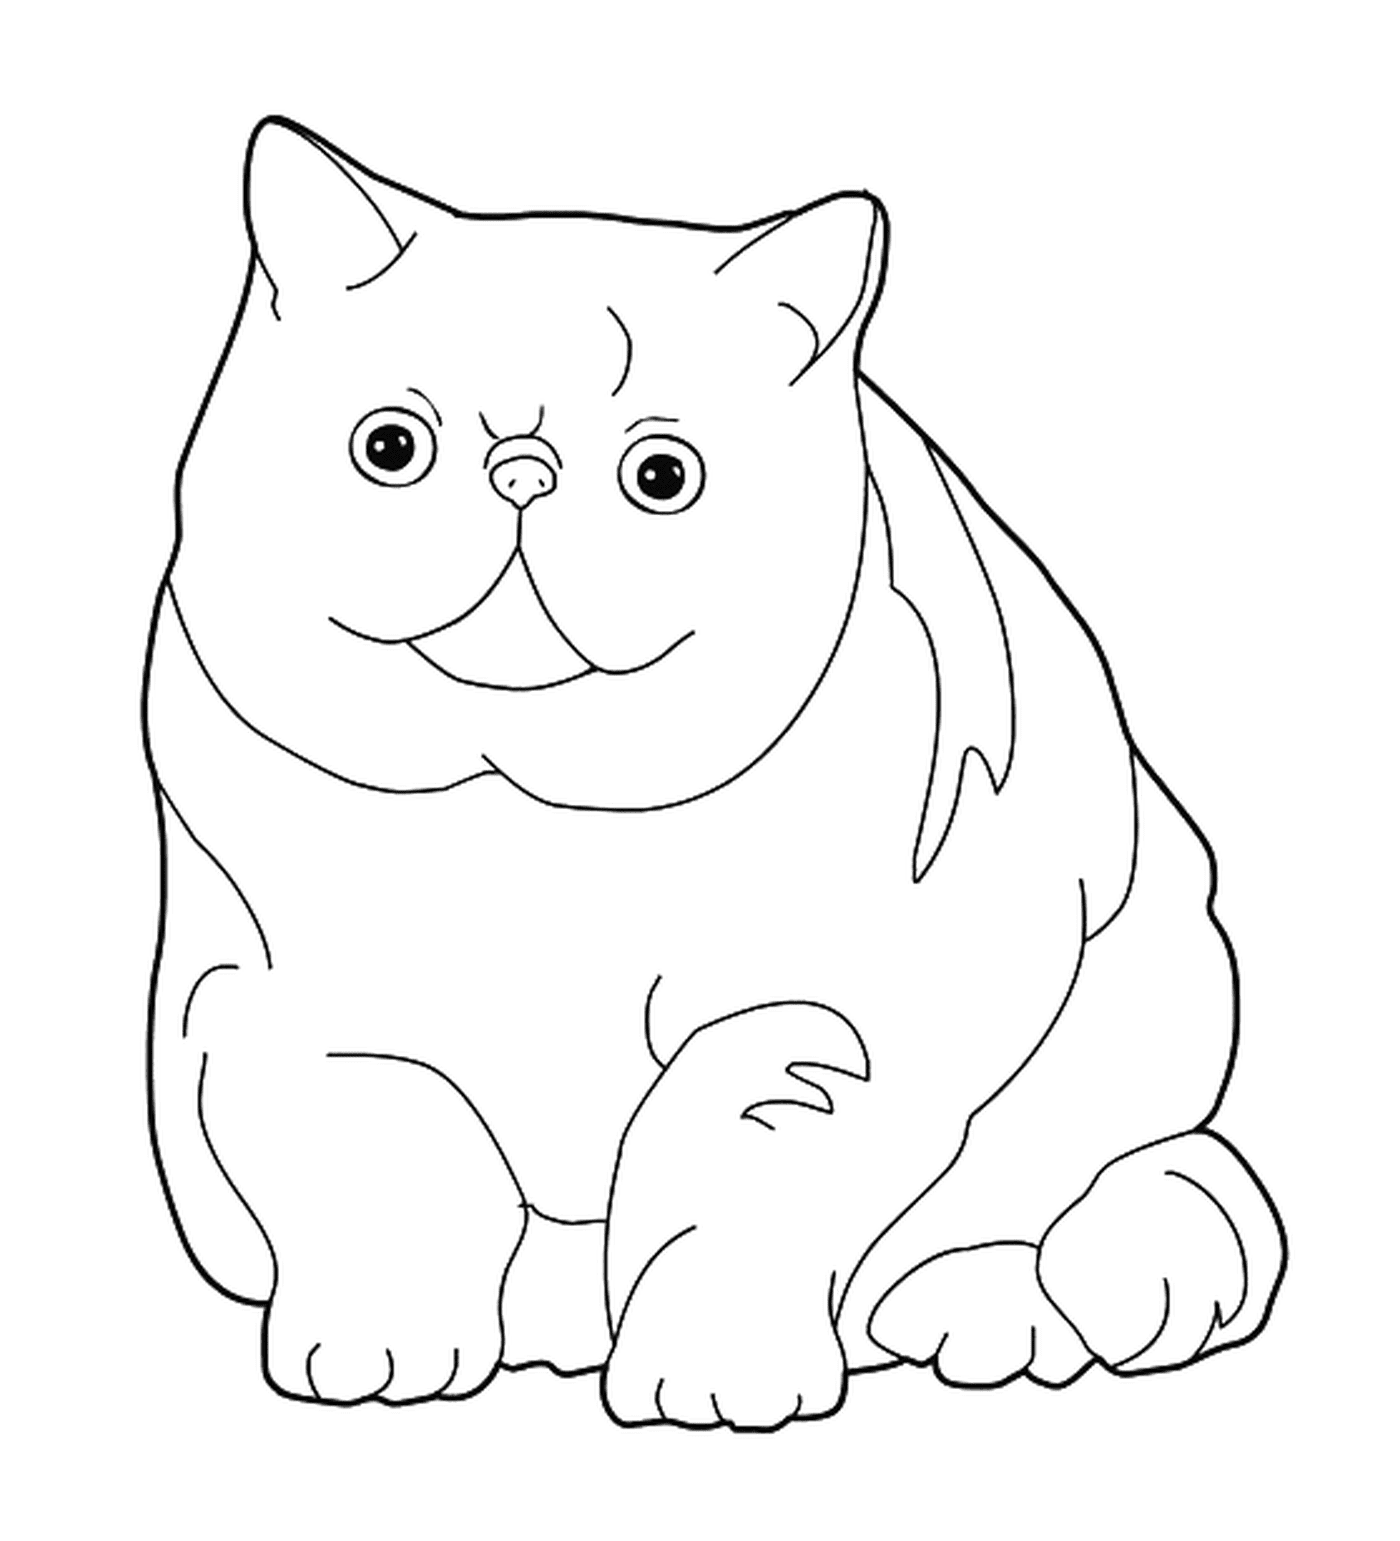  Экзотическая шорта, кошка с плоским лицом 